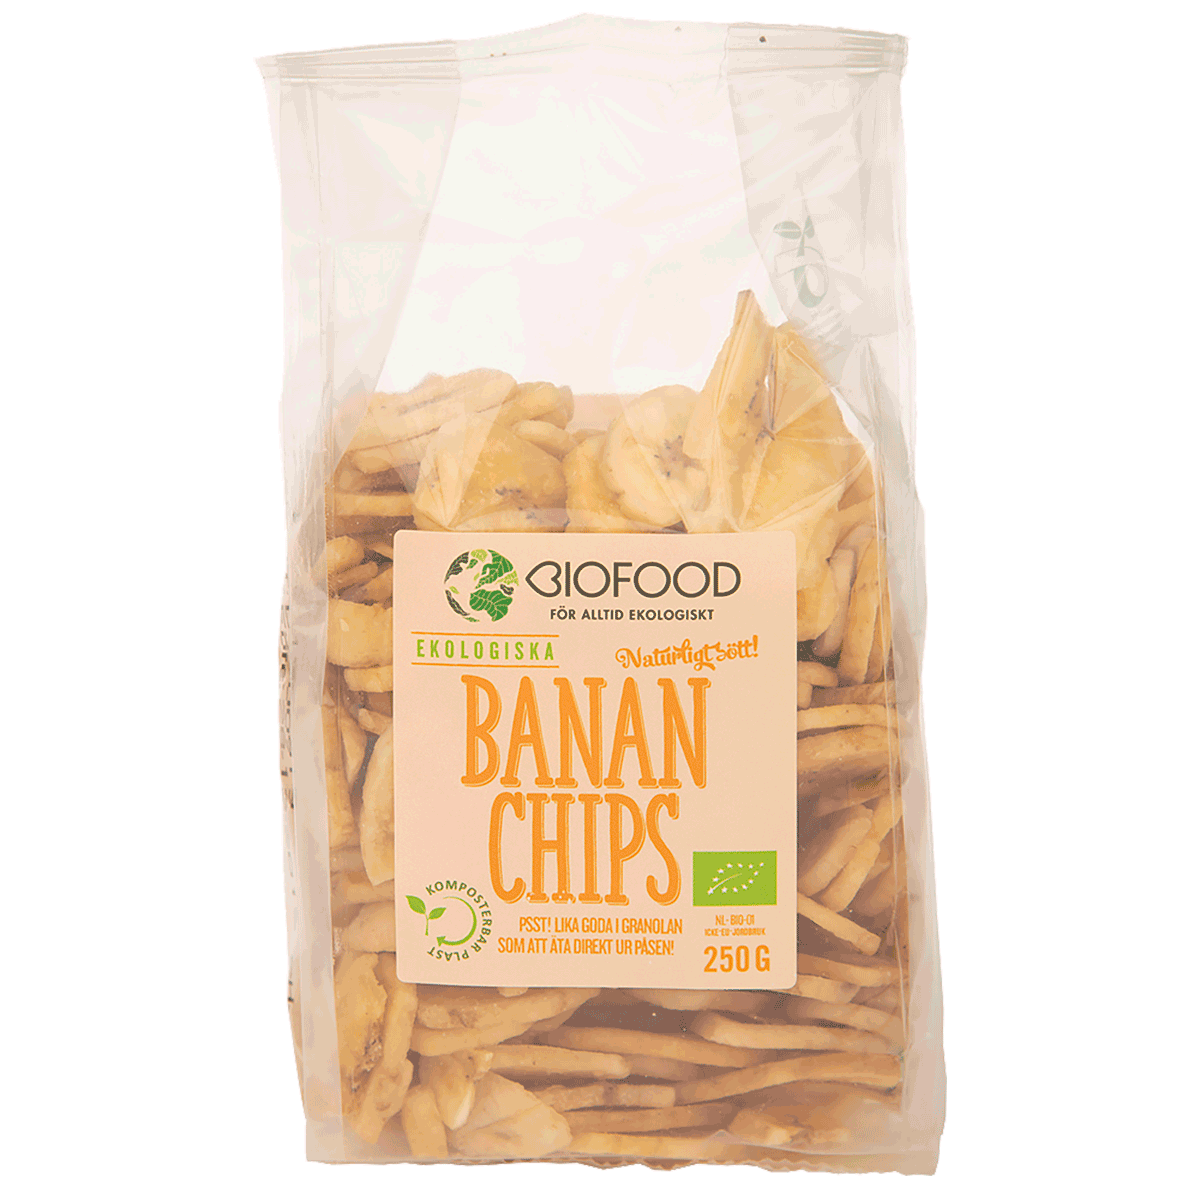 Bananenchips von Biofood